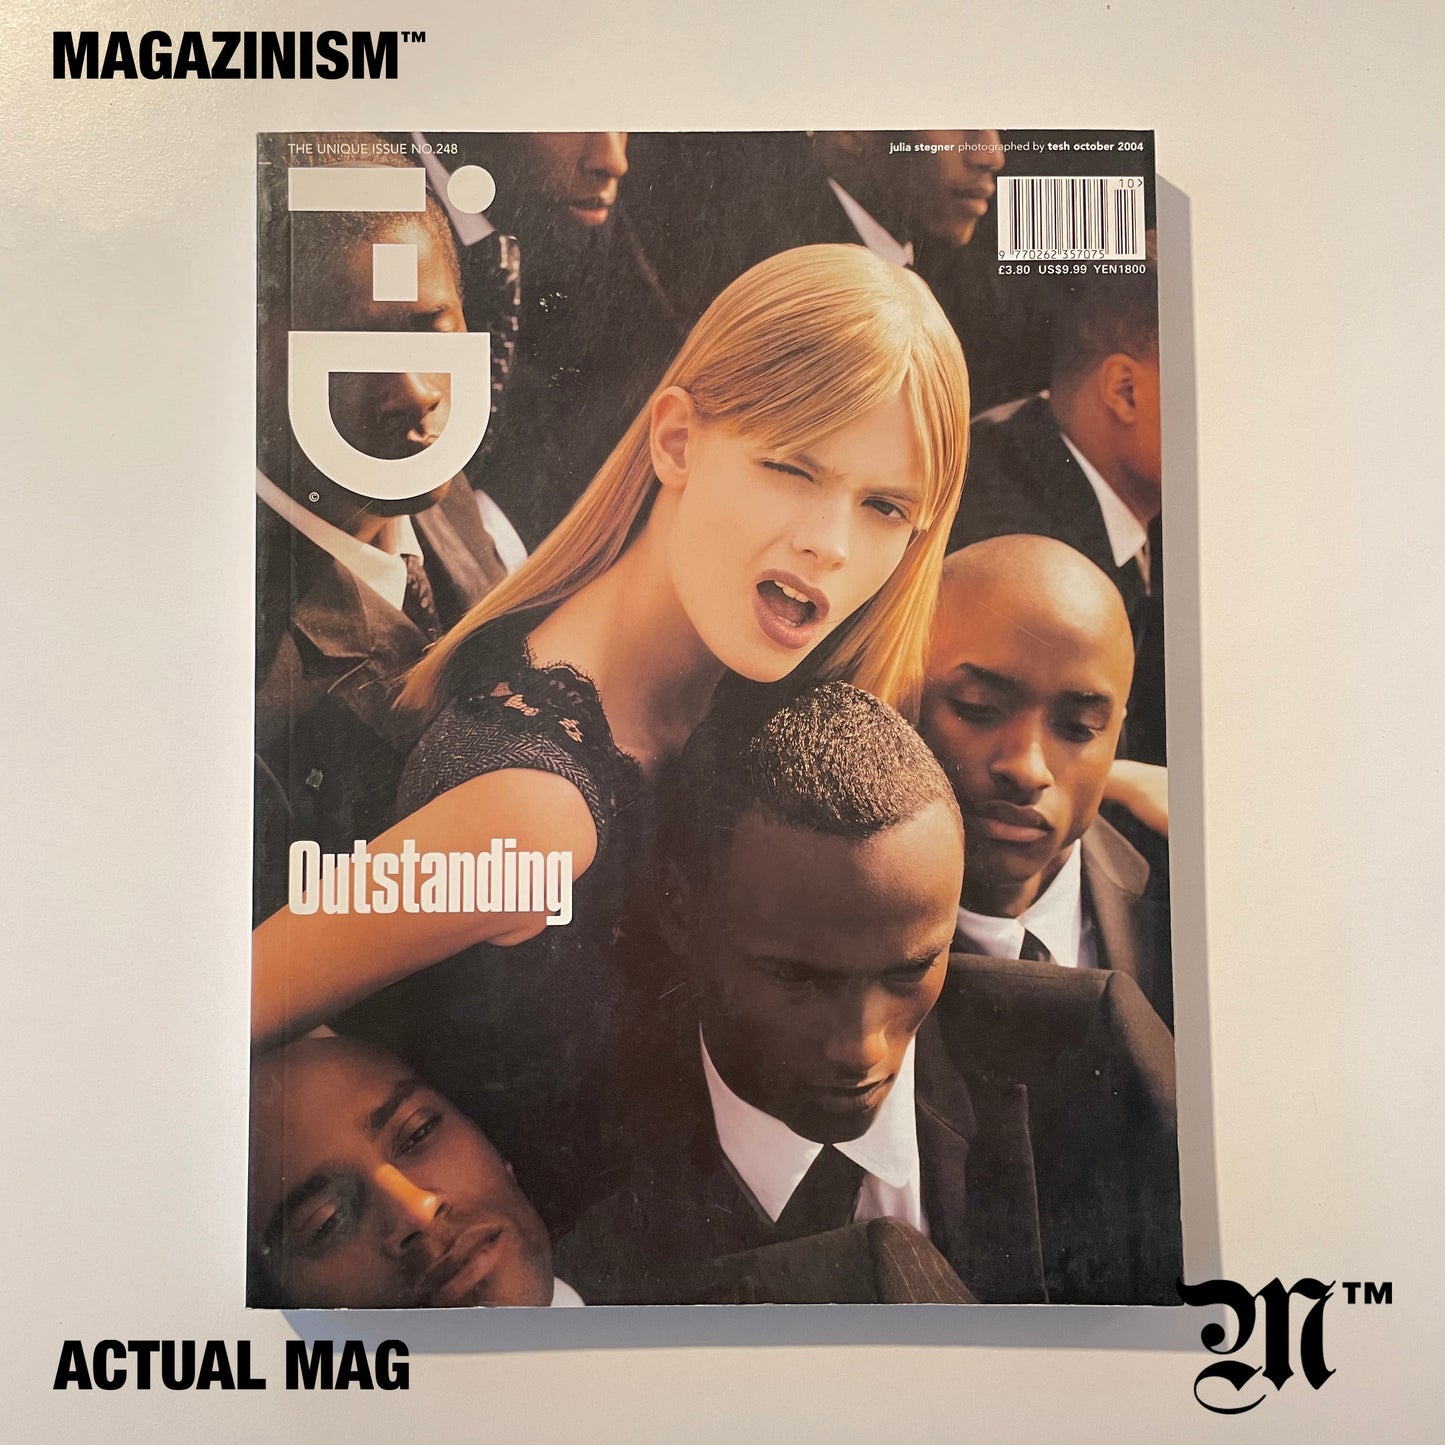 i-D Magazine No.248 2004 October